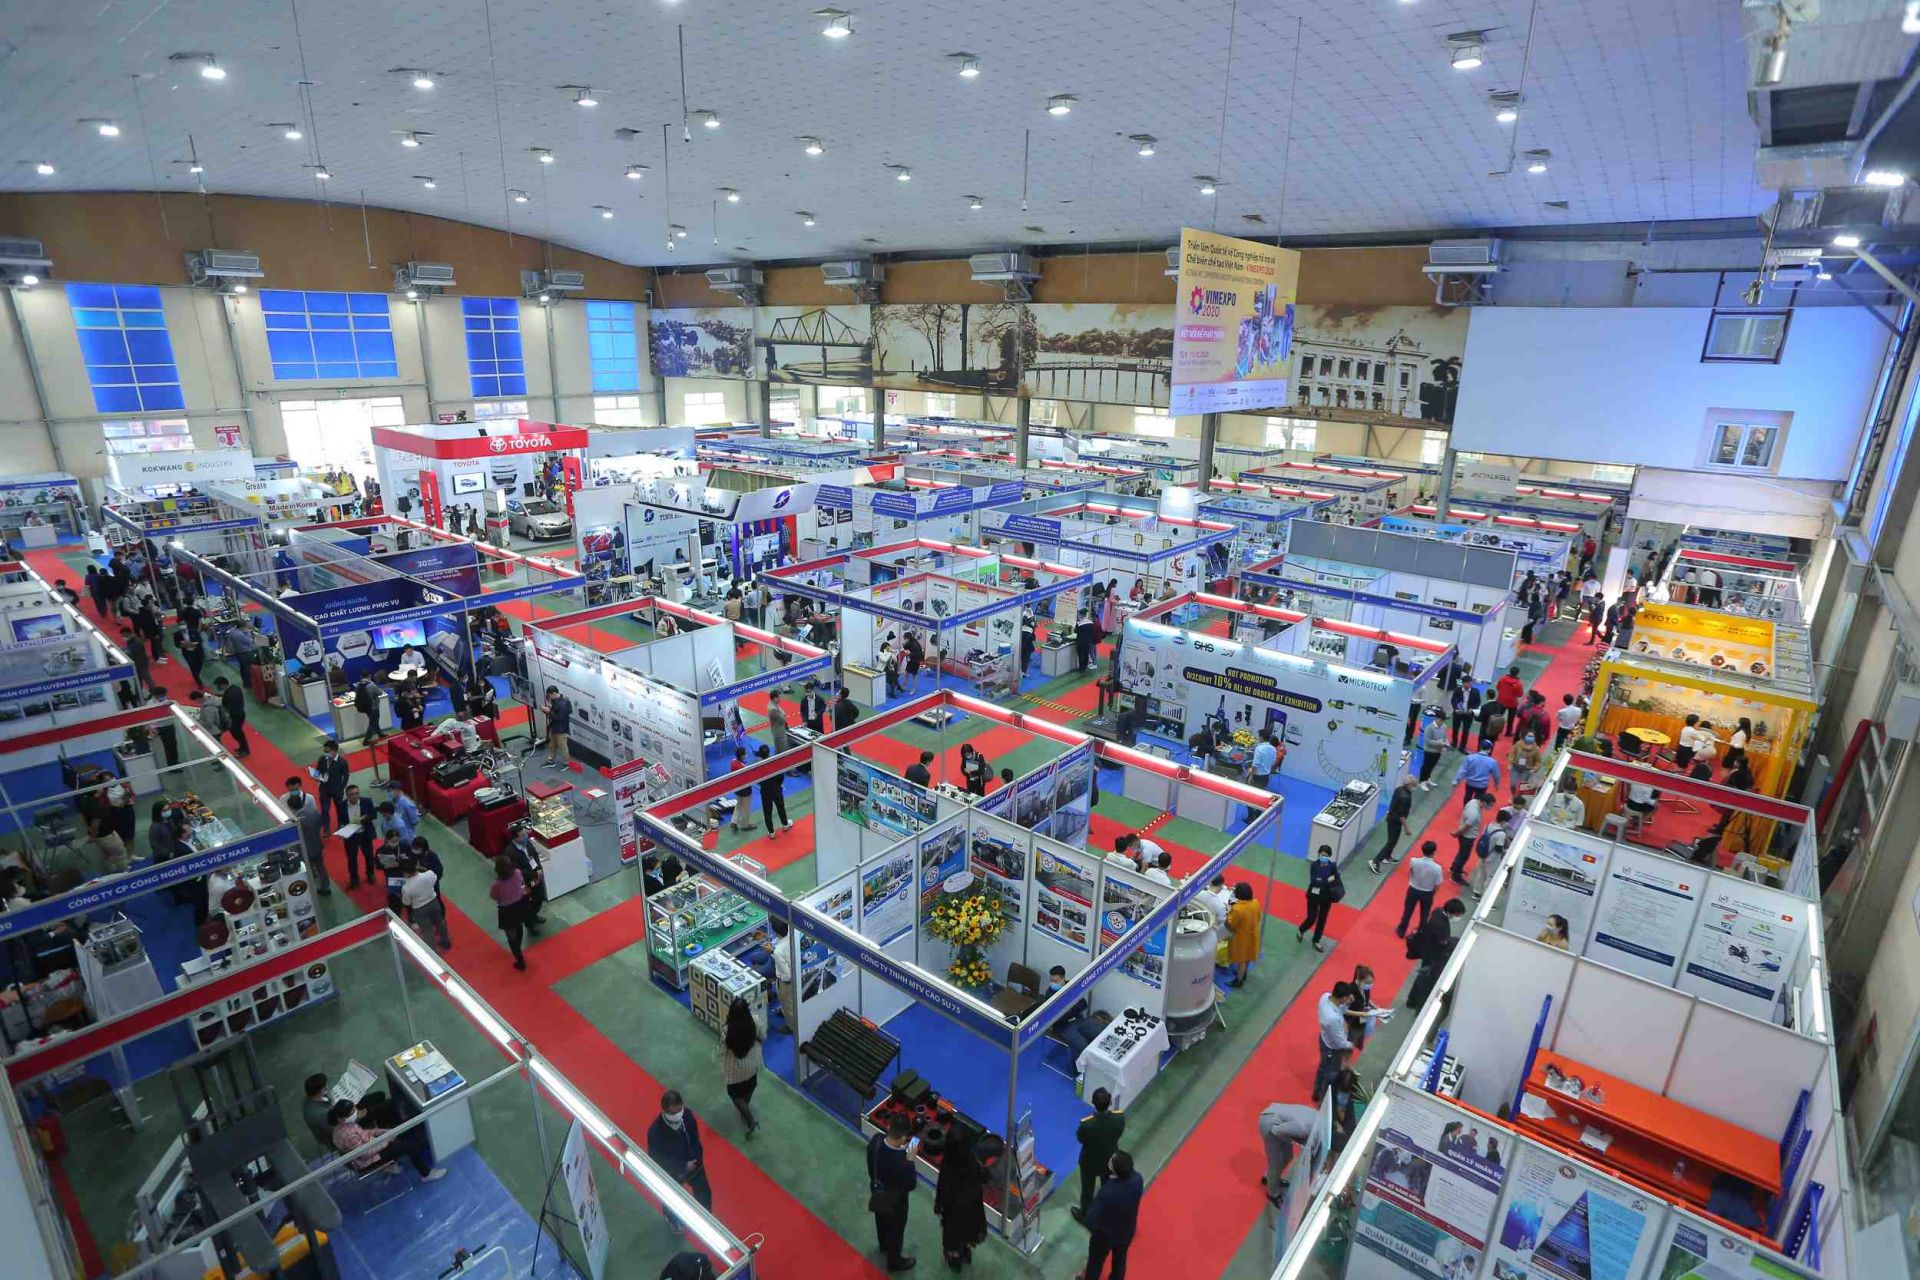 VIMEXPO 2021 sẽ diễn ra vào ngày 15-17/12/2021 tại Hà Nội, có quy mô trưng bày 7.000m2 với 250 gian hàng của hơn 200 doanh nghiệp trong và ngoài nước